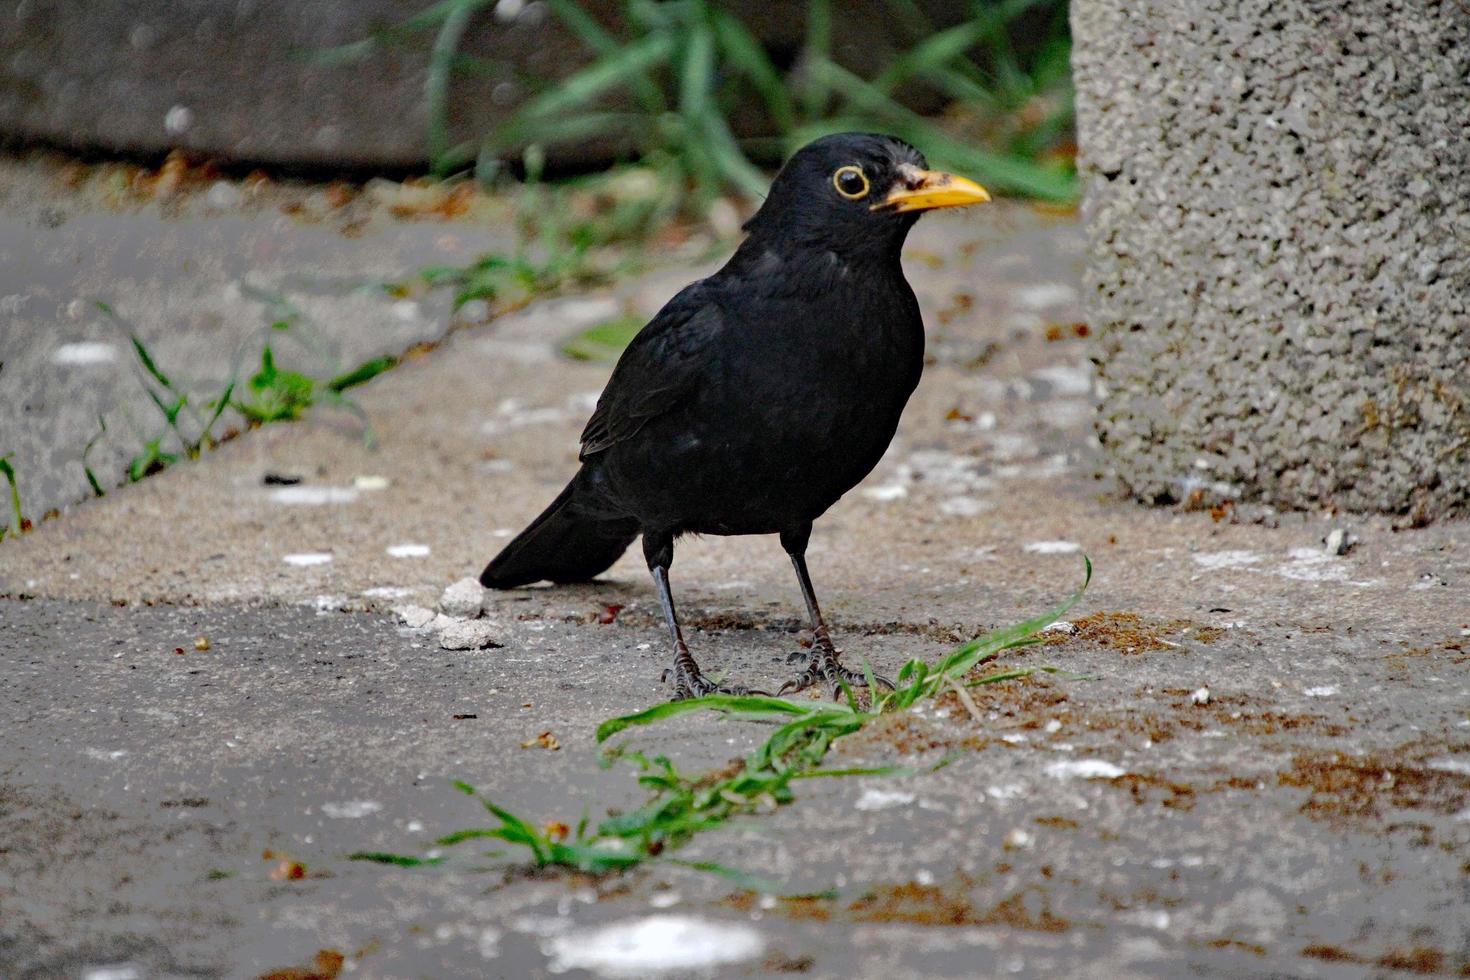 A close up of a Blackbird in the garden photo